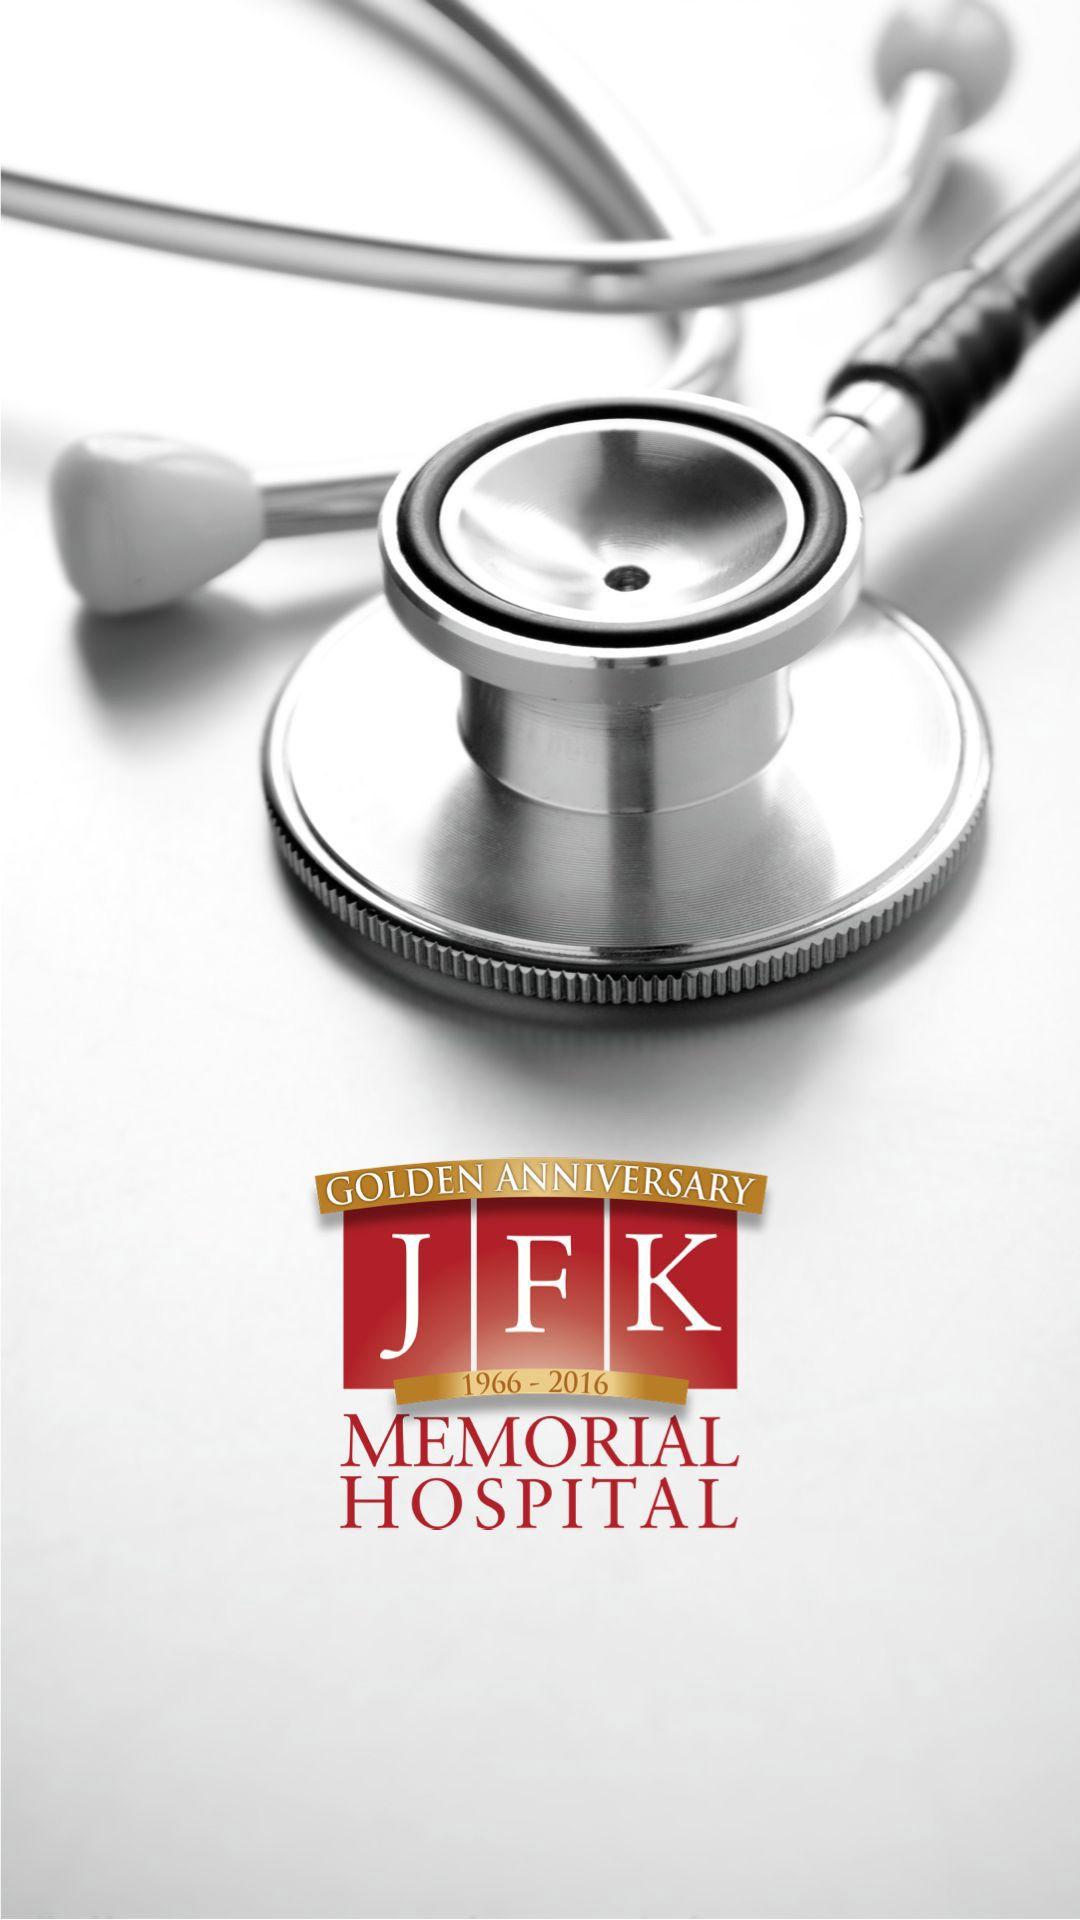 JFK Memorial Hospital